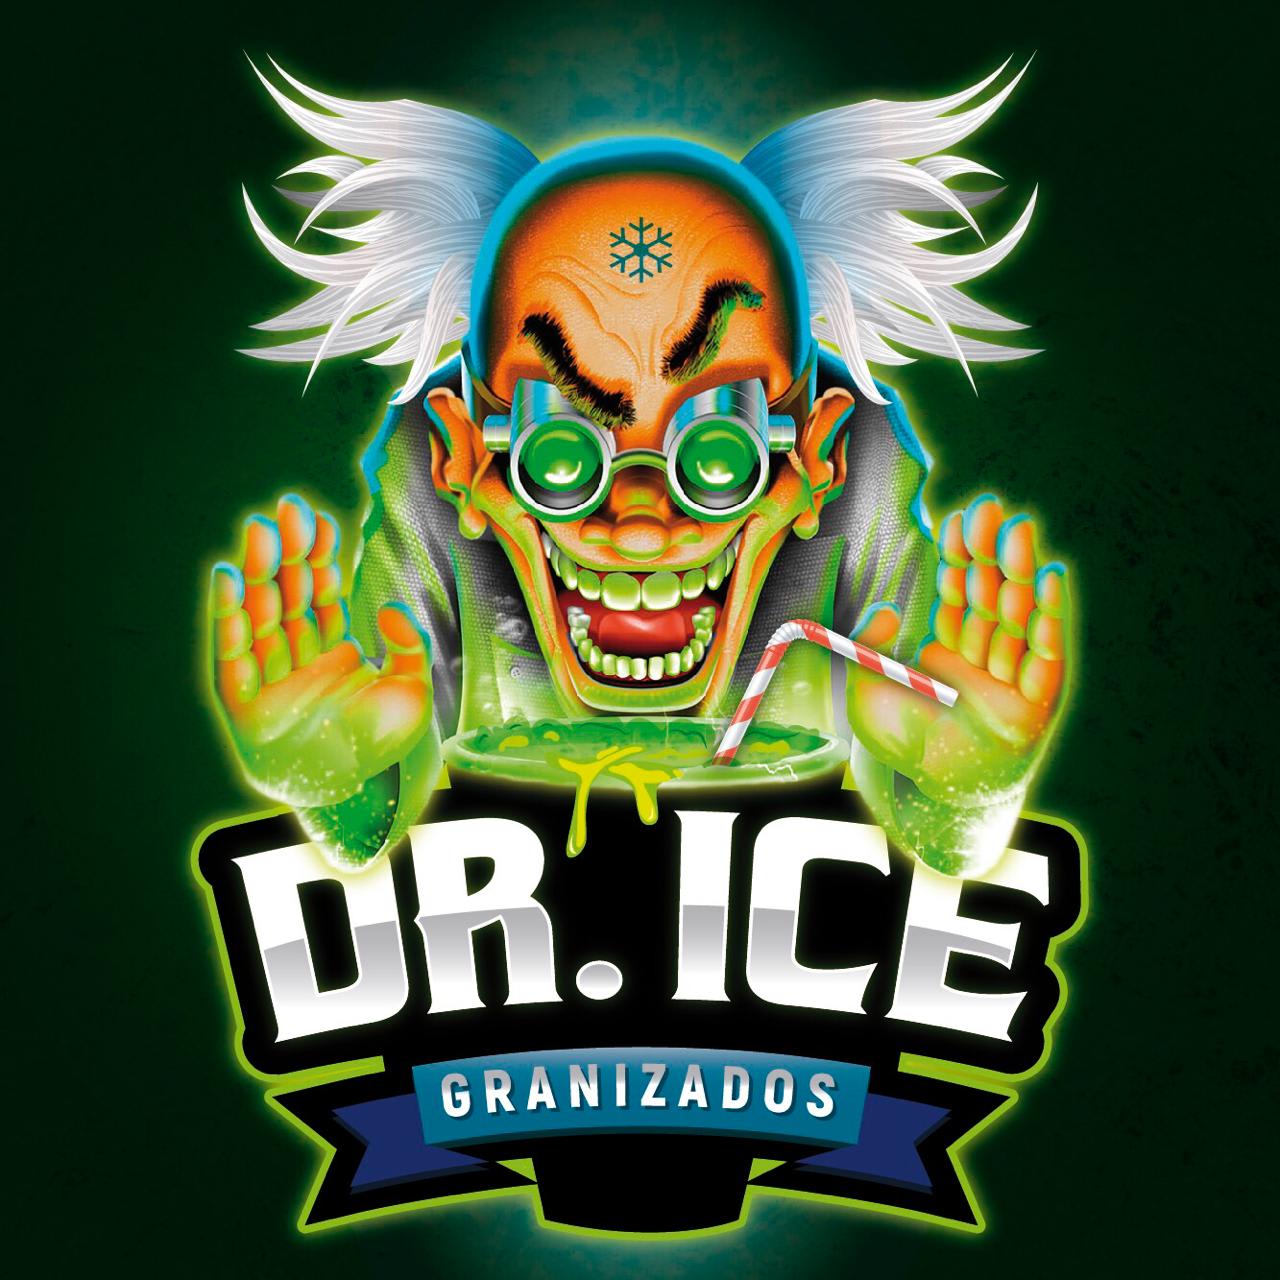 Dr Ice Granizados